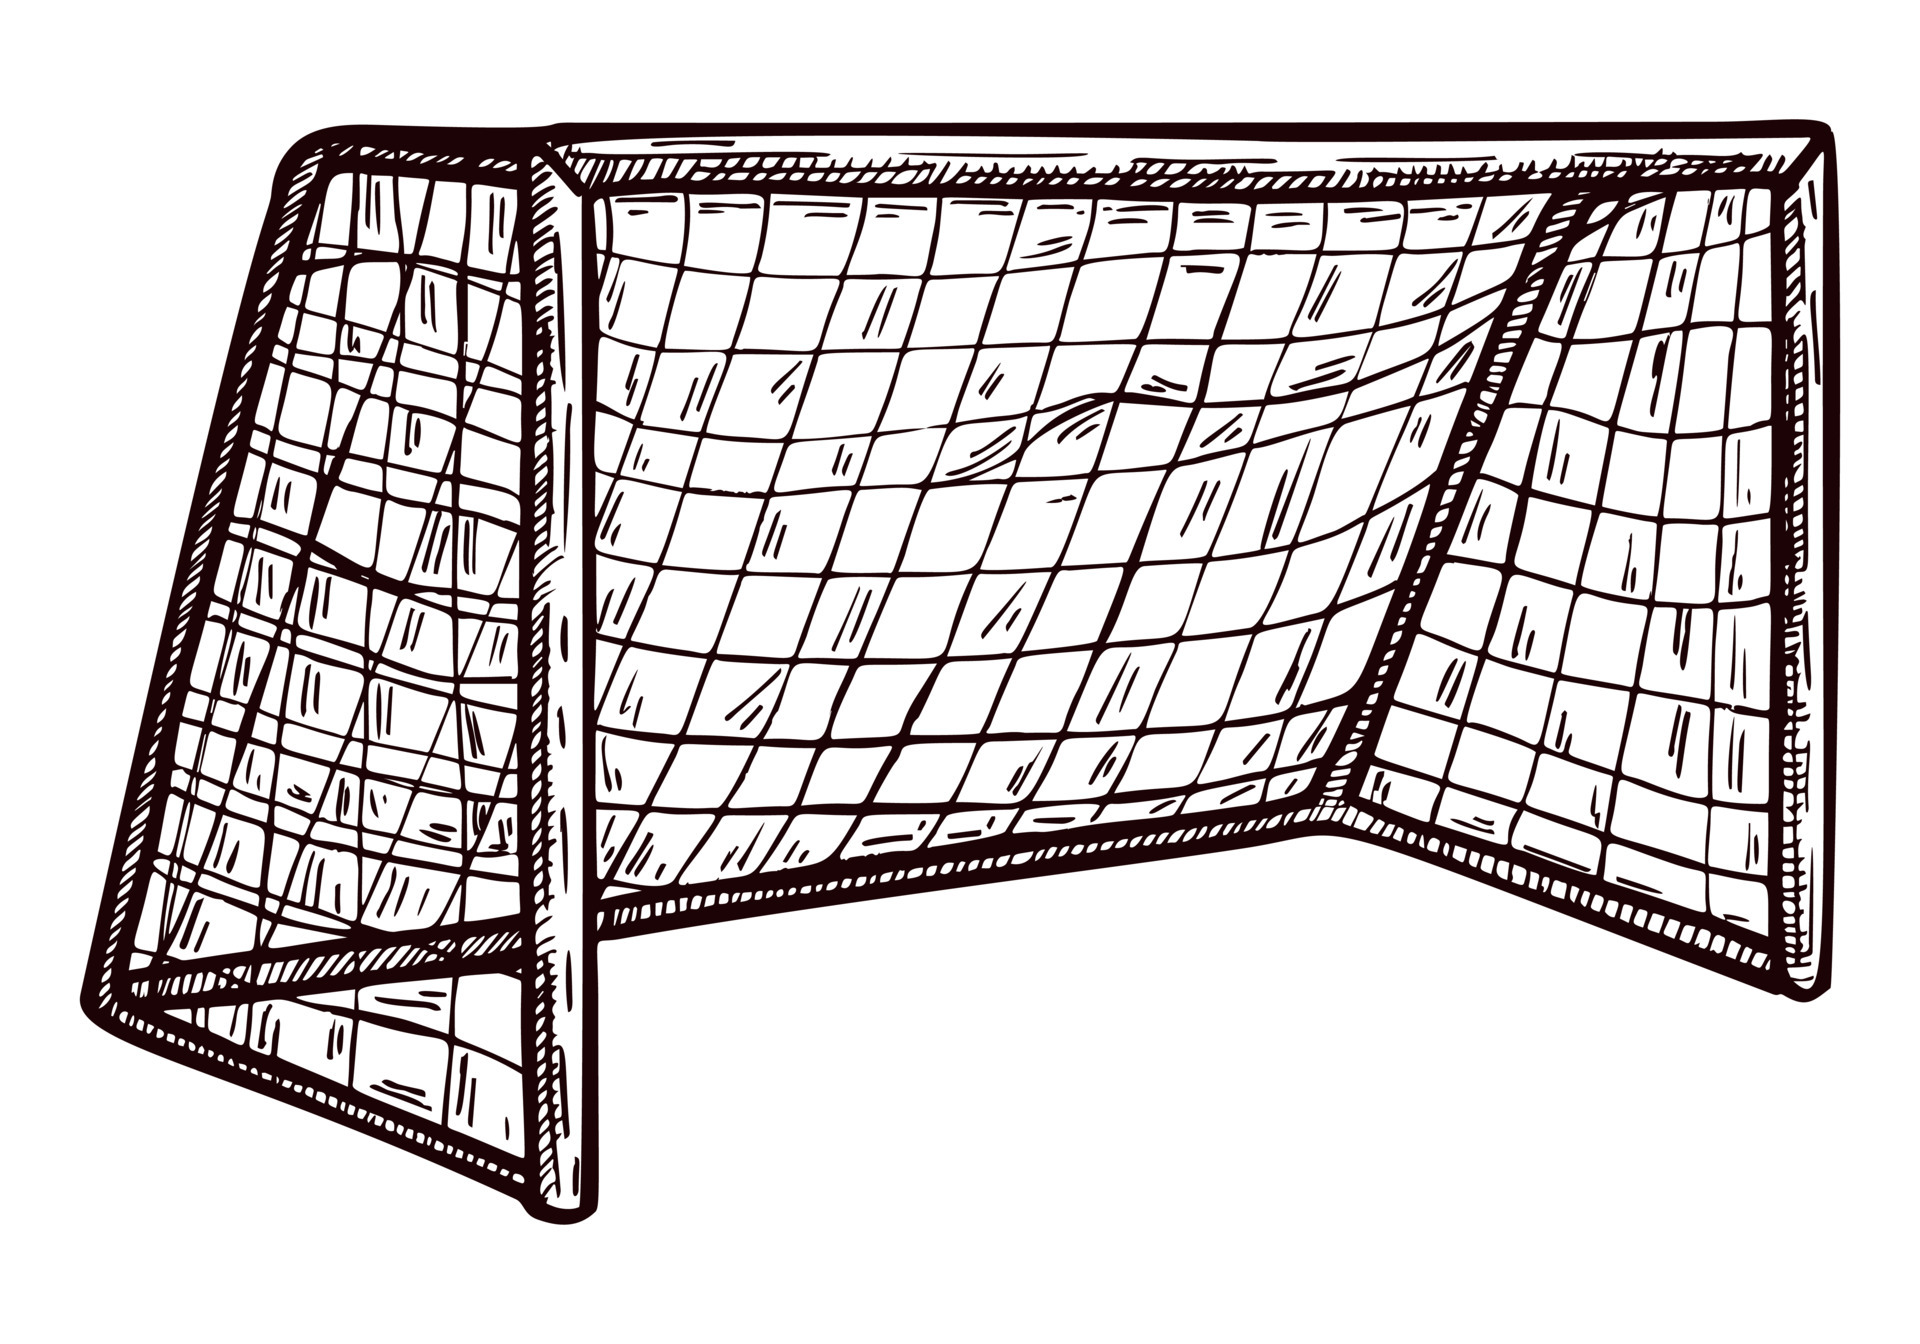 Рисовать футбольные ворота